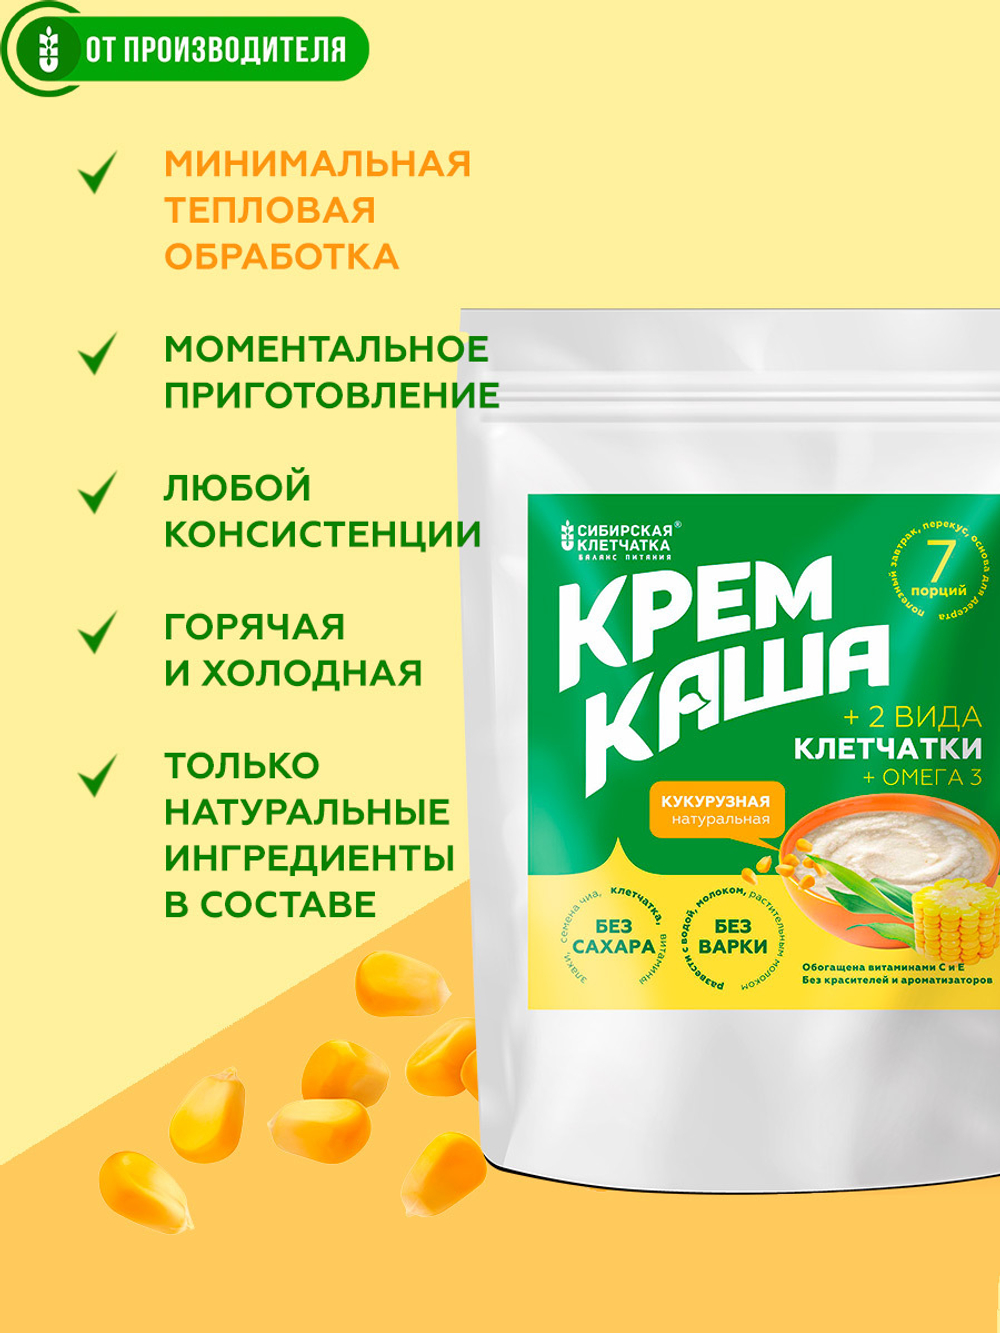 D_Kasha_kykyruznay_natural_preim